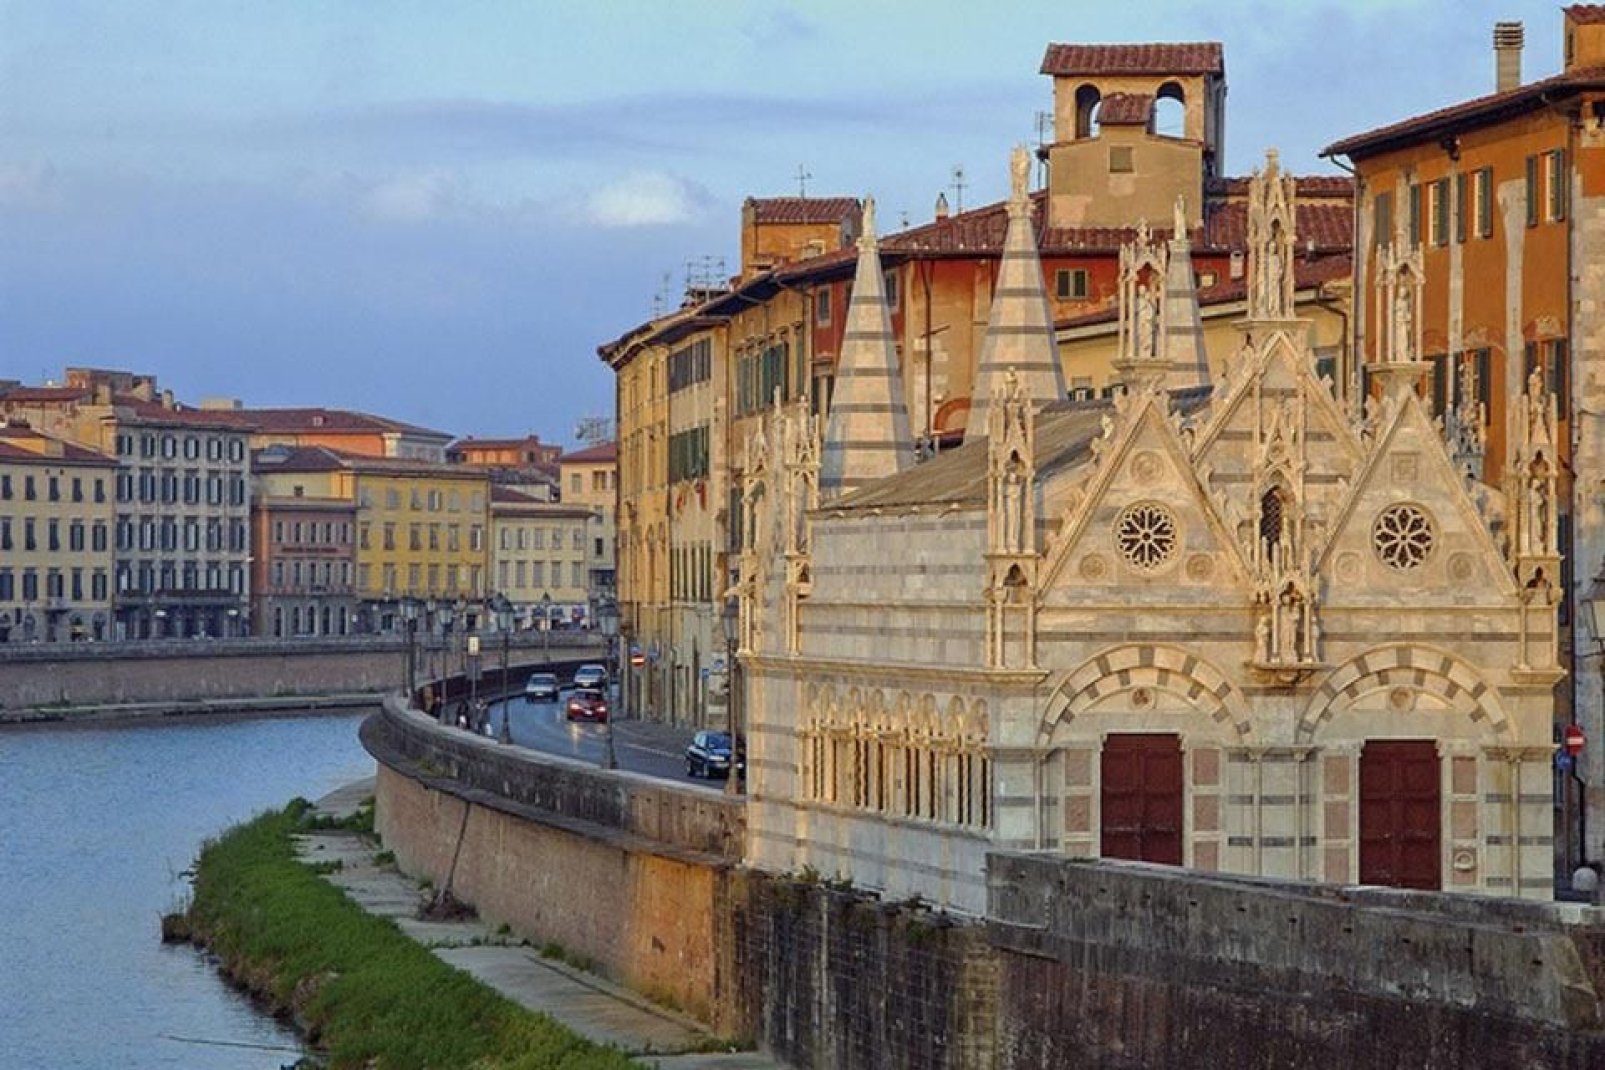 Die Kirche Santa Maria della Spina ist eine kleine gotische Kirche, die am Fluss Arno in Pisa liegt.